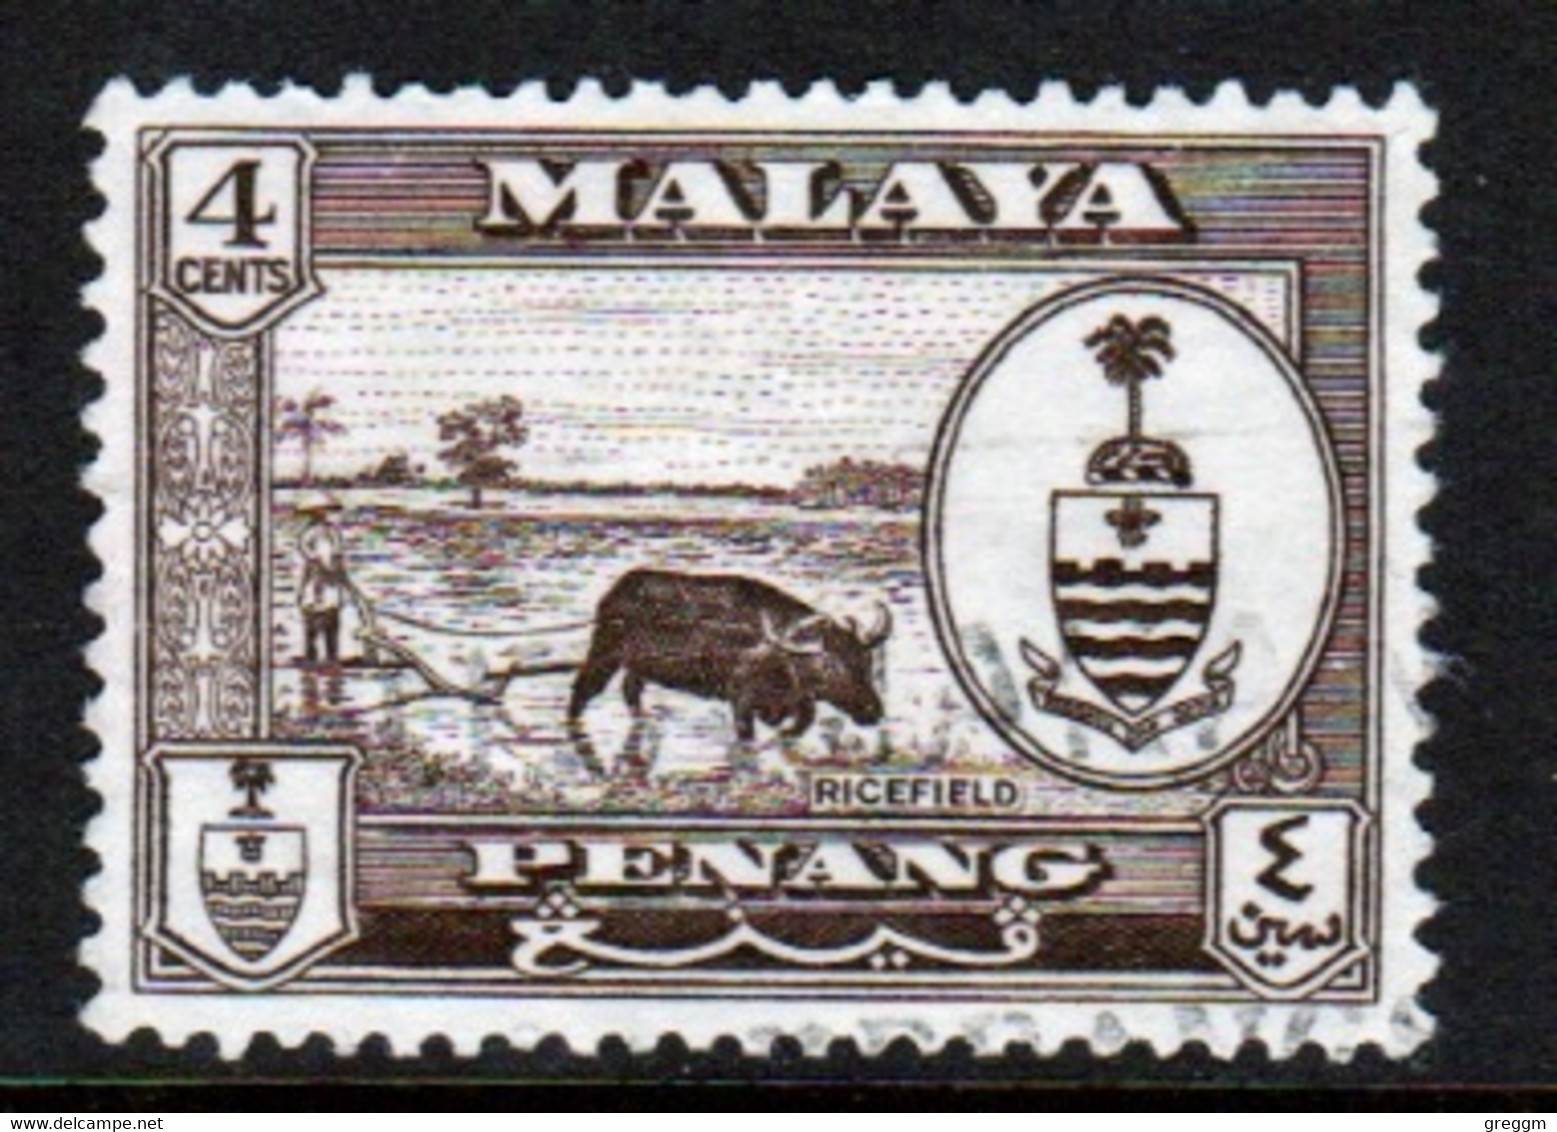 Malaya Penang 1960 Queen Elizabeth II Single 4c Stamp In Fine Used - Penang